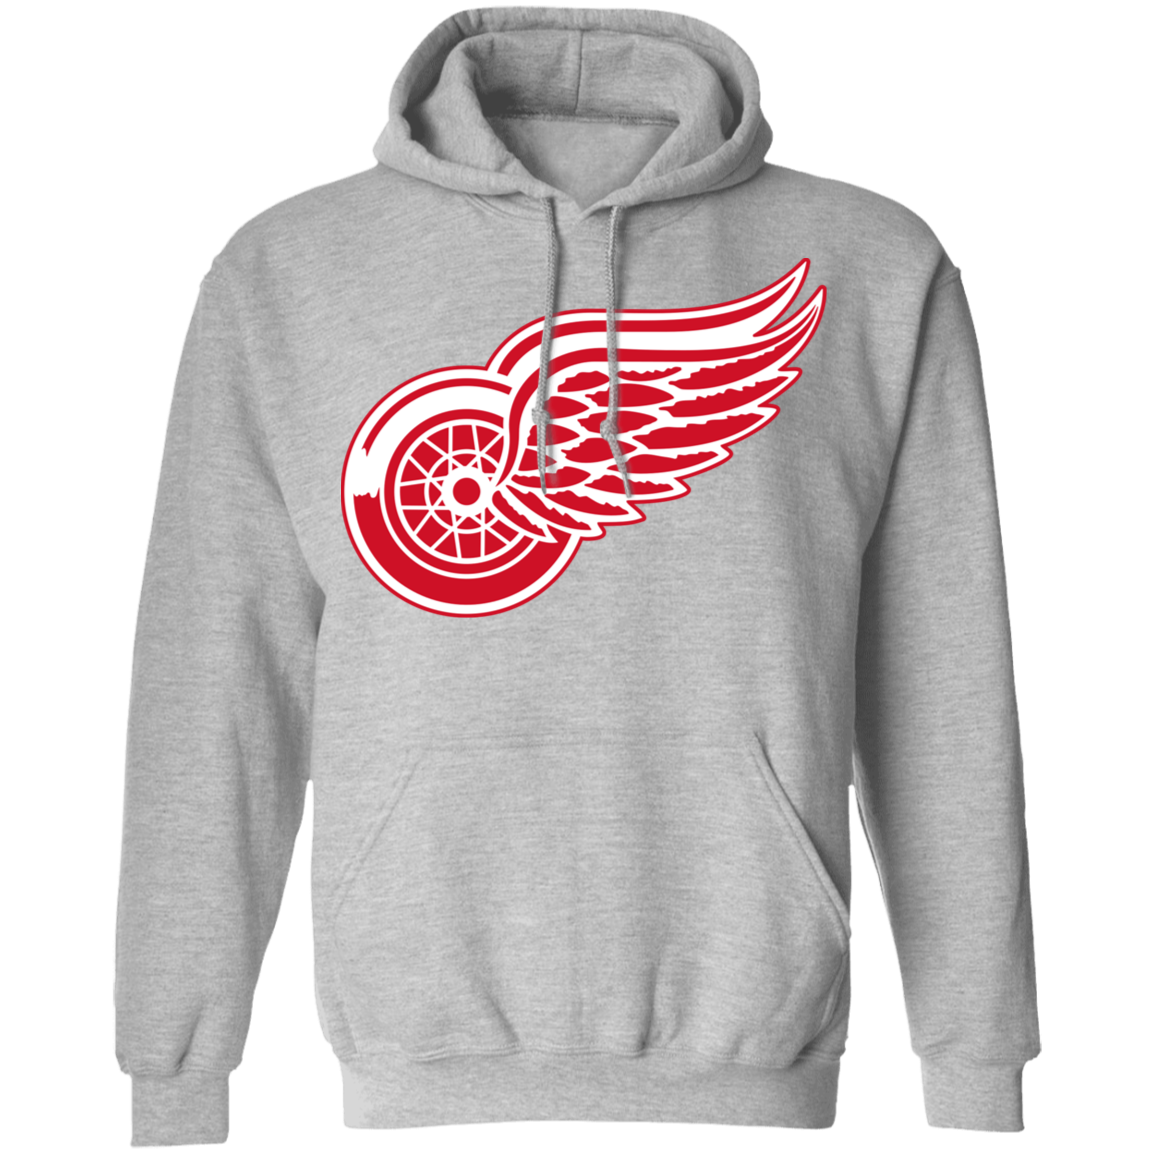 Detroit Red Wings Pullover Hoodie